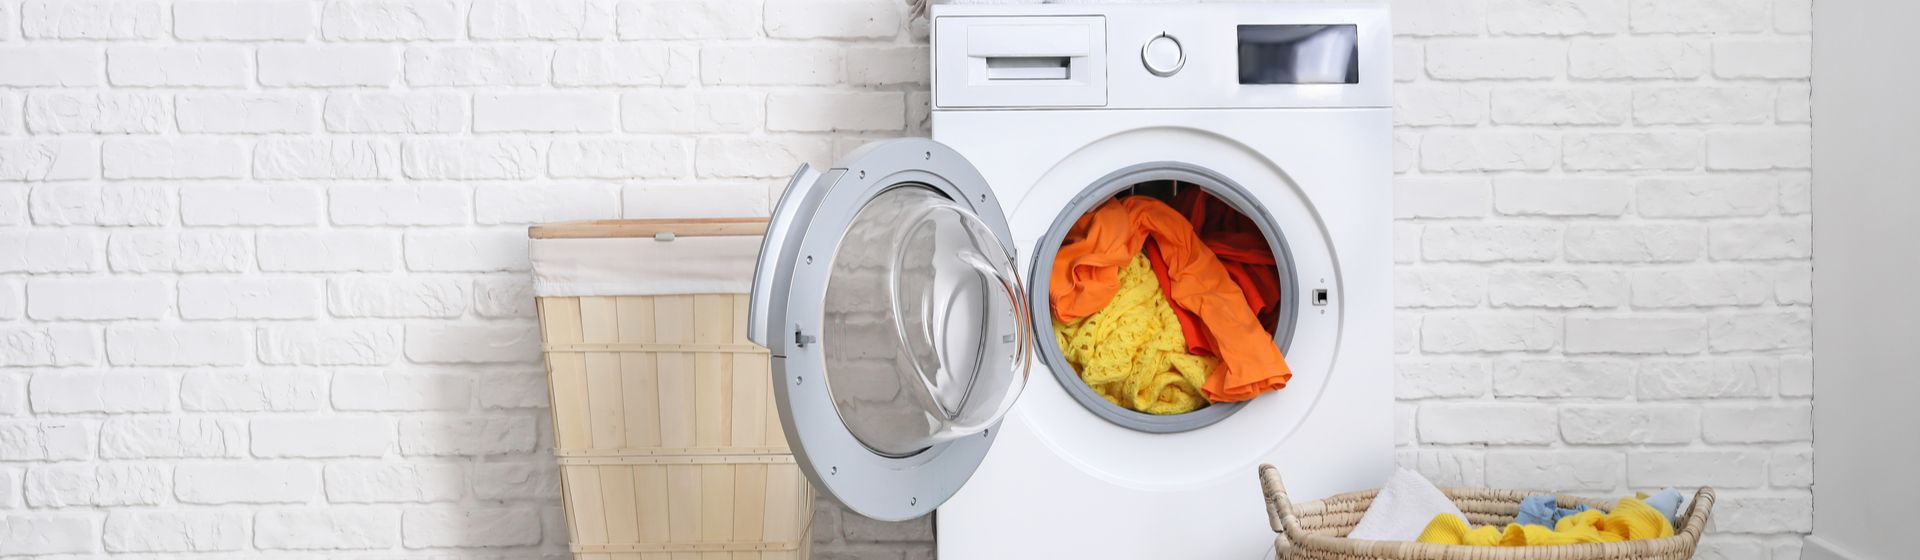 Capa do post: Qual o melhor tipo de abertura nas lavadoras: top load ou front load?